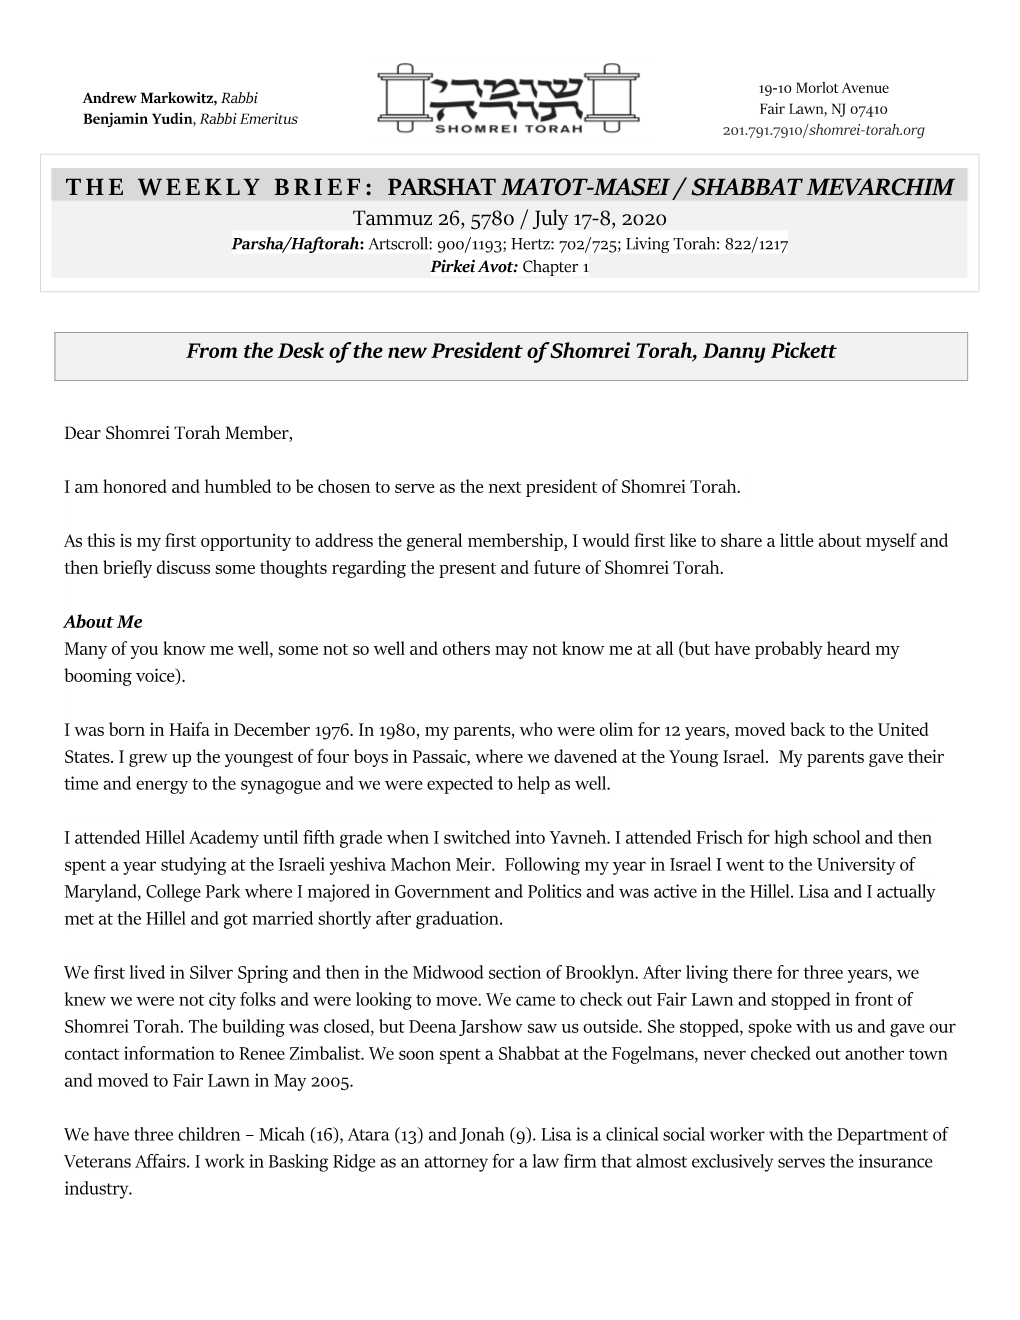 The Weekly Brief: Parshat Matot-Masei / Shabbat